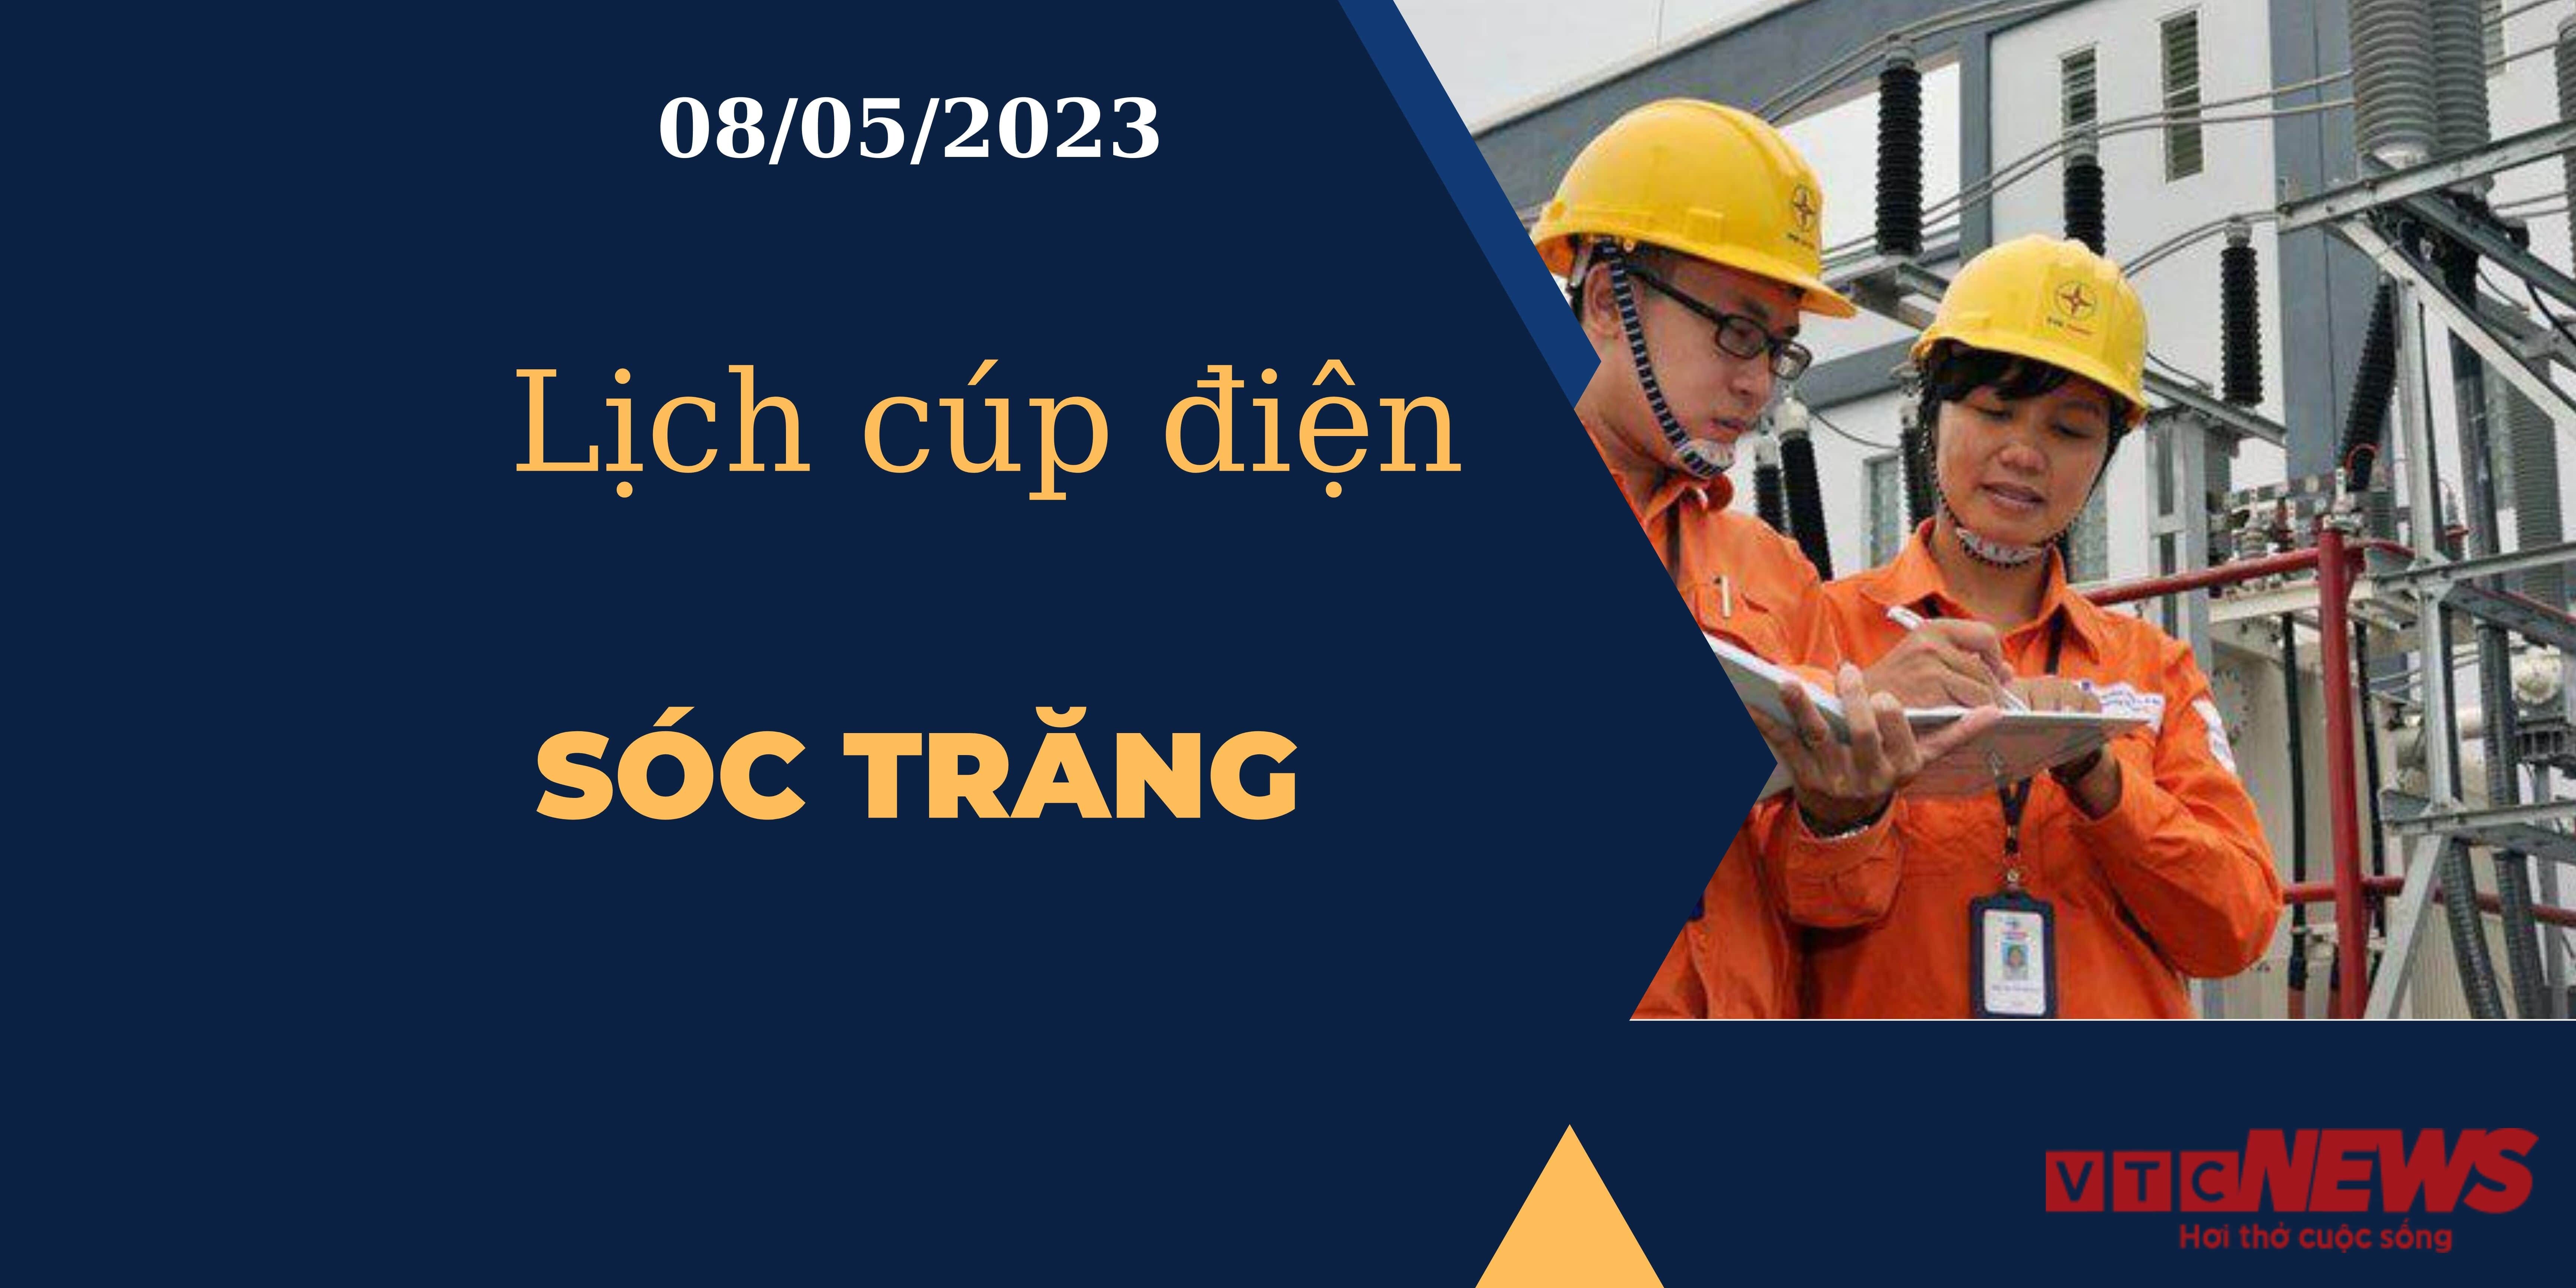 Lịch cúp điện hôm nay ngày 08/05/2023 tại Sóc Trăng - 1